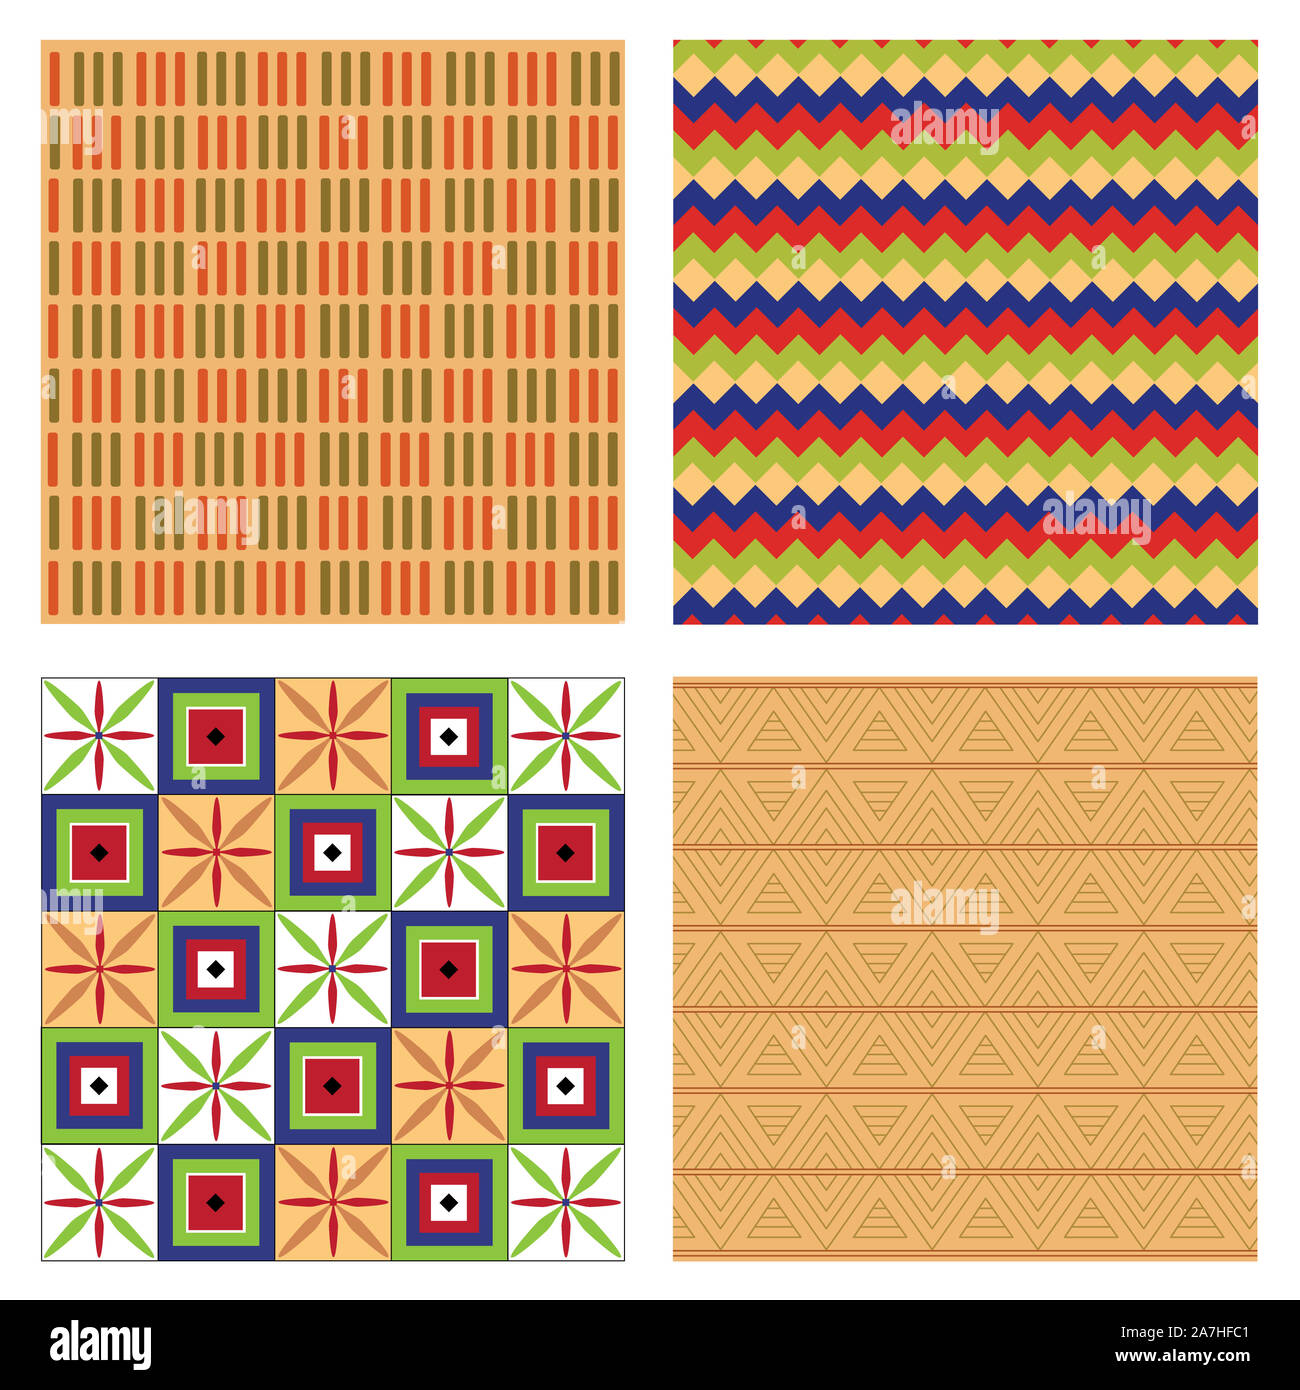 Ägypten nationalen Ornament pattern Volume 2. Ägyptische dekorative textile Elemente Hintergrund. Die afrikanische Kultur Stoff Design. Stockfoto